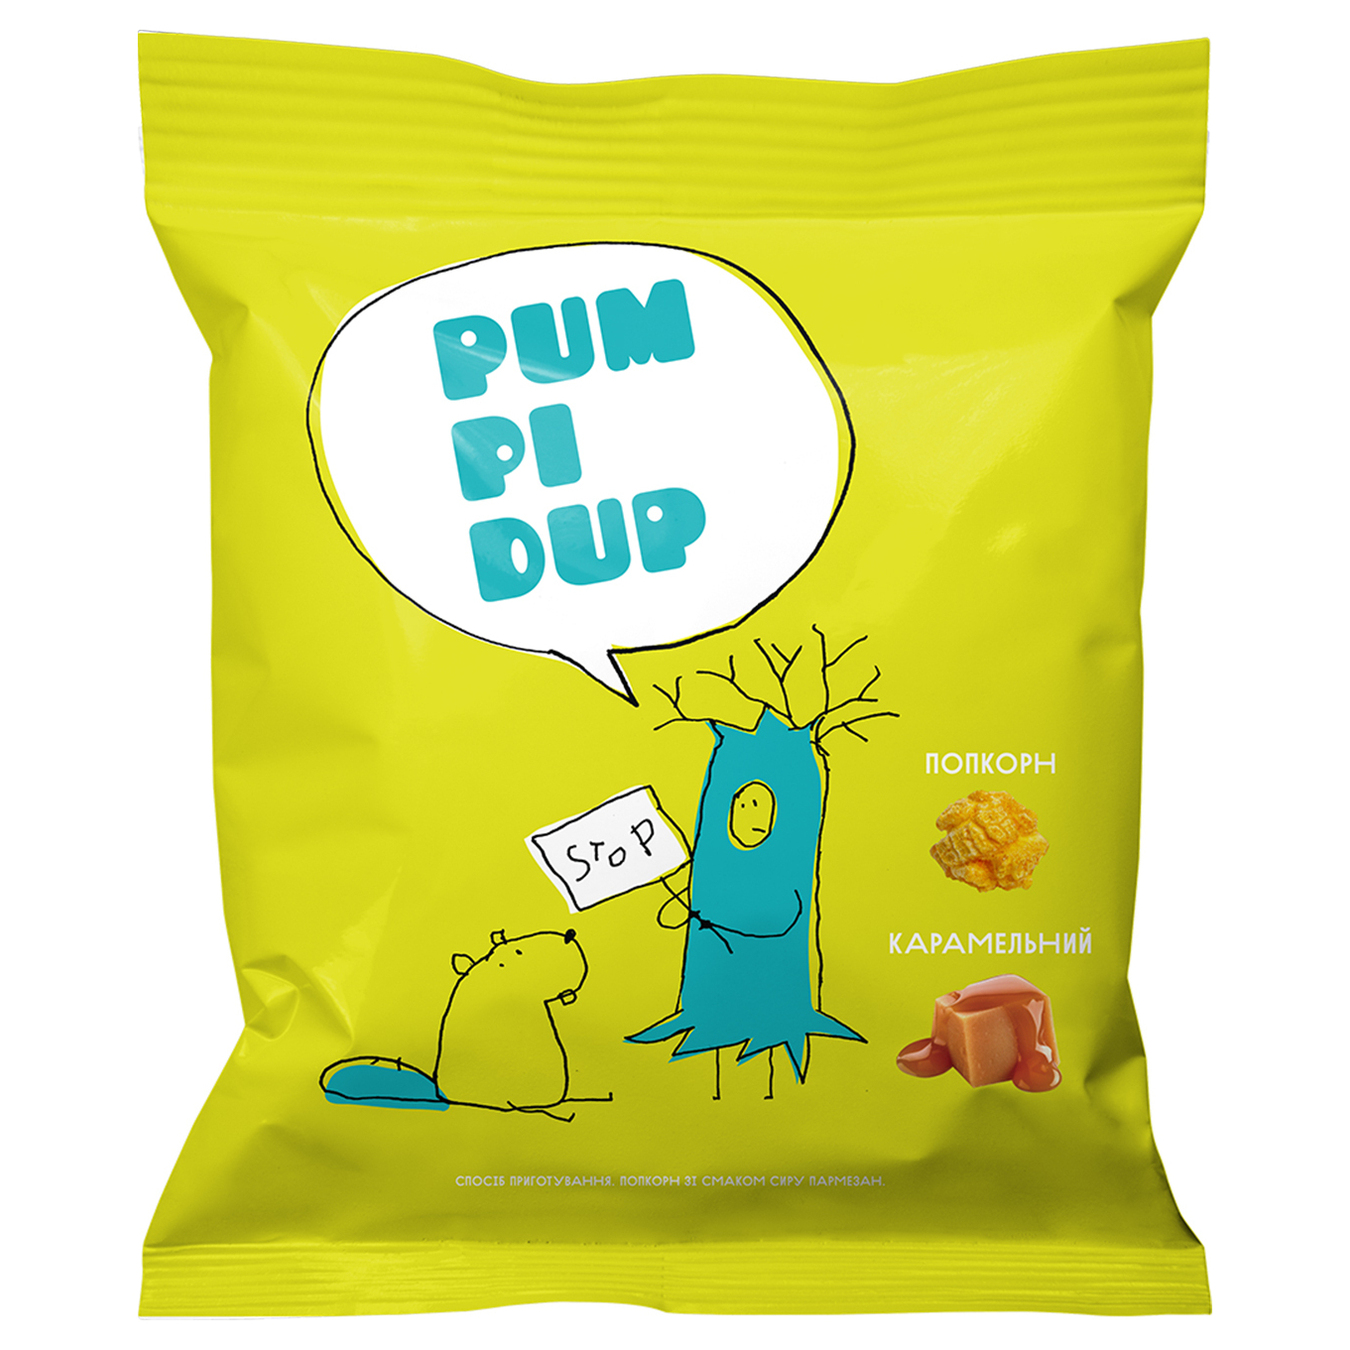 Попкорн Pumpidup карамельный 90г